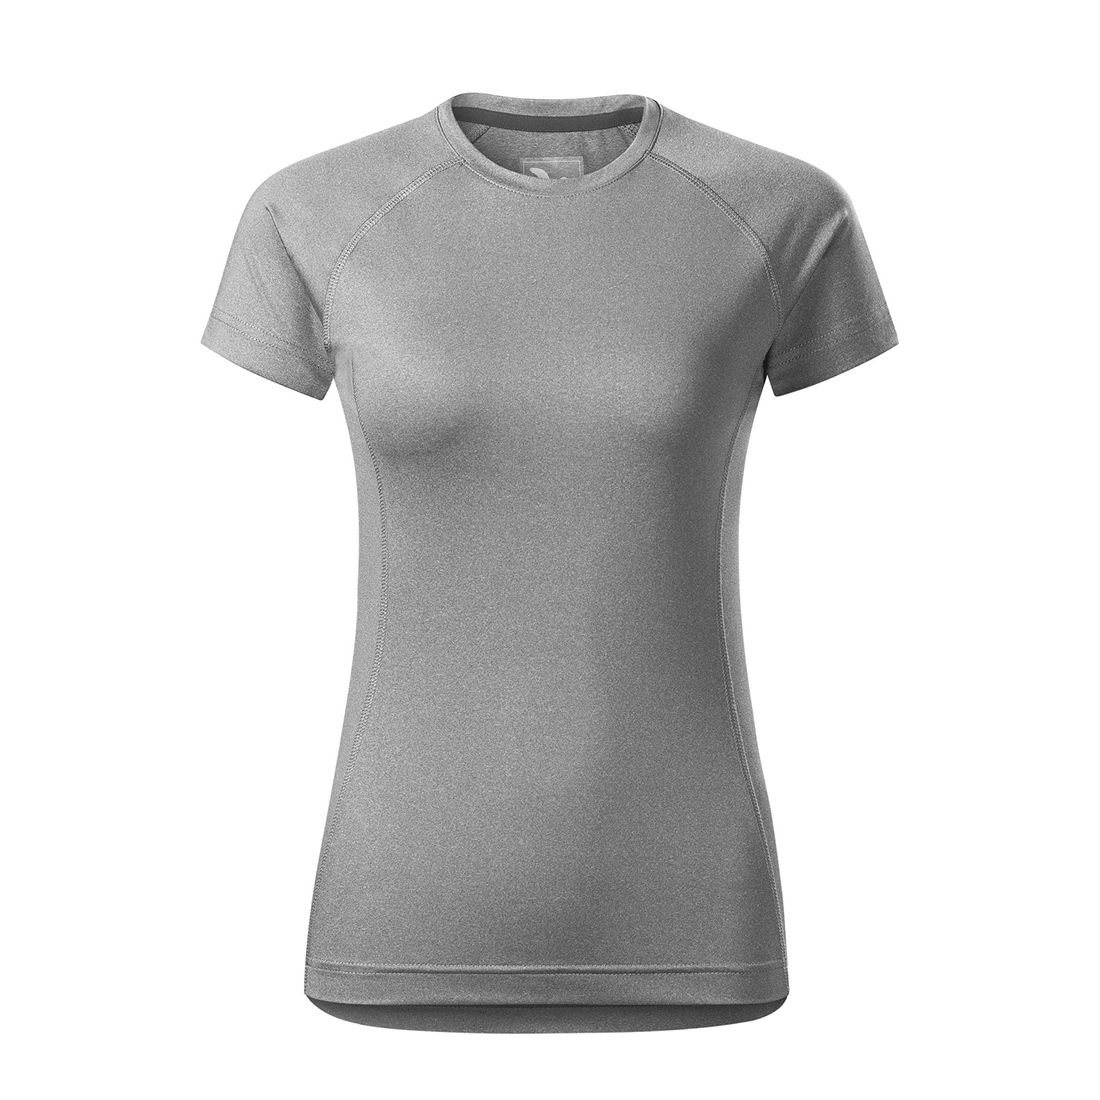 Tee-shirt femme DESTINY - Les vêtements de protection